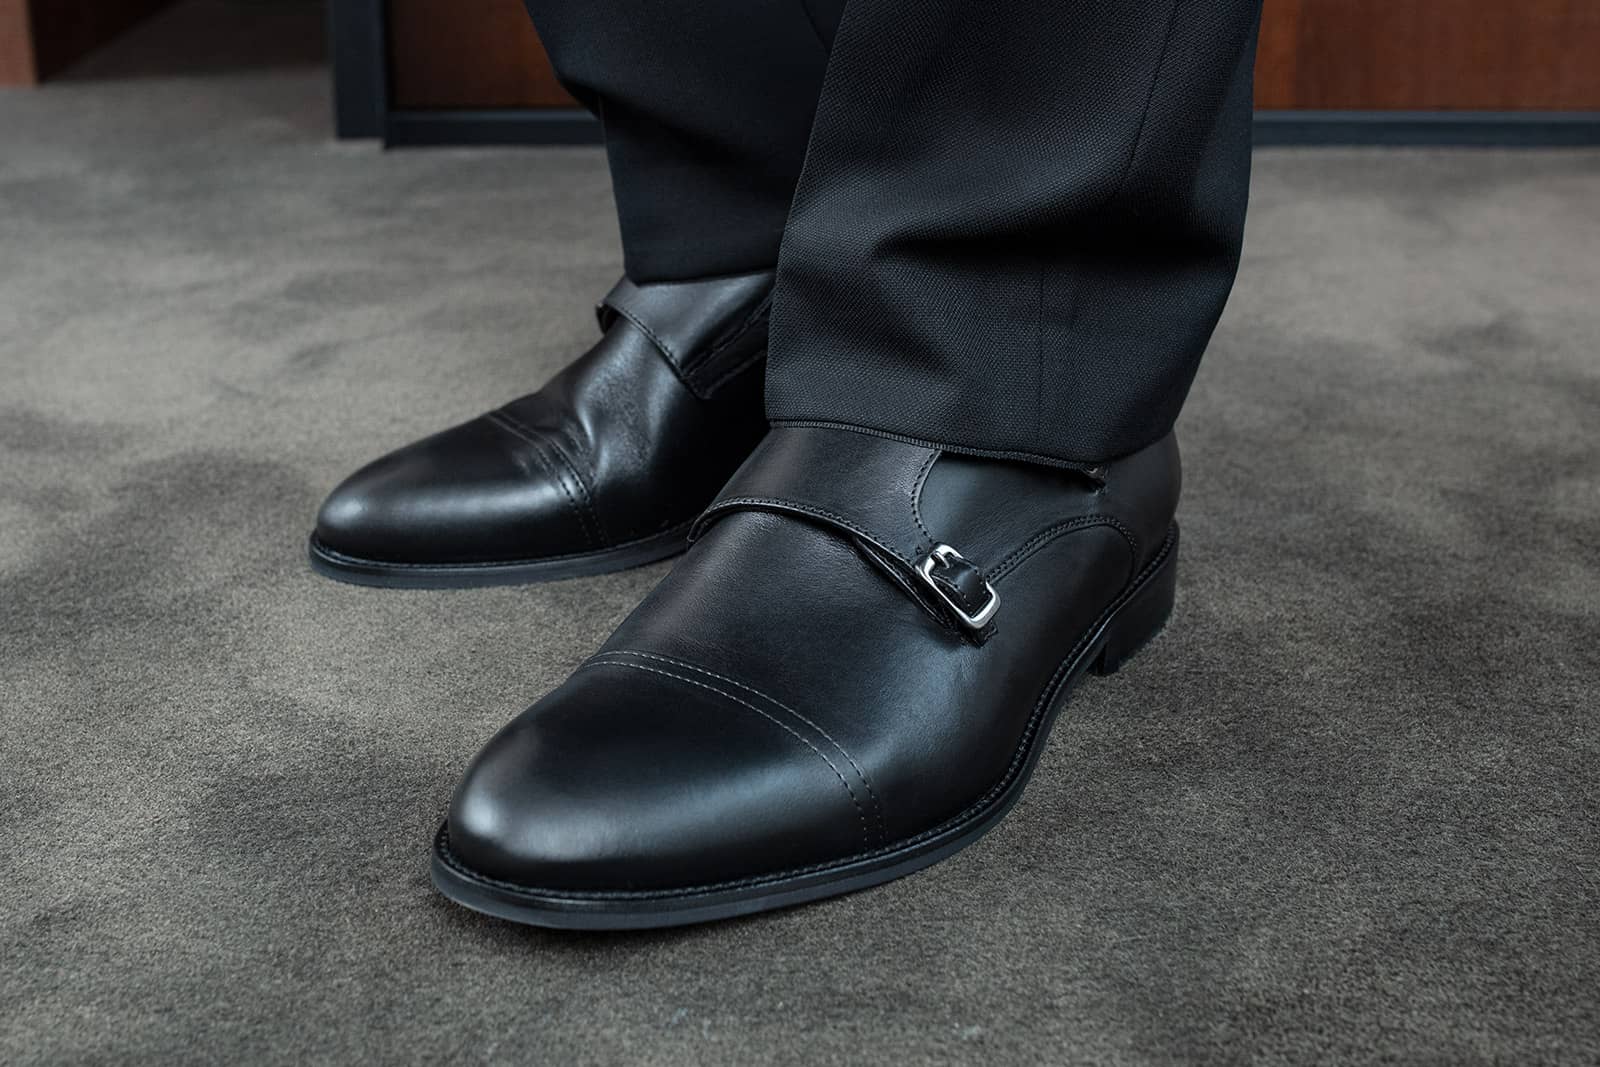 Pánská obuv Nicone Nero – ideální do práce i pro volný čas - náhled